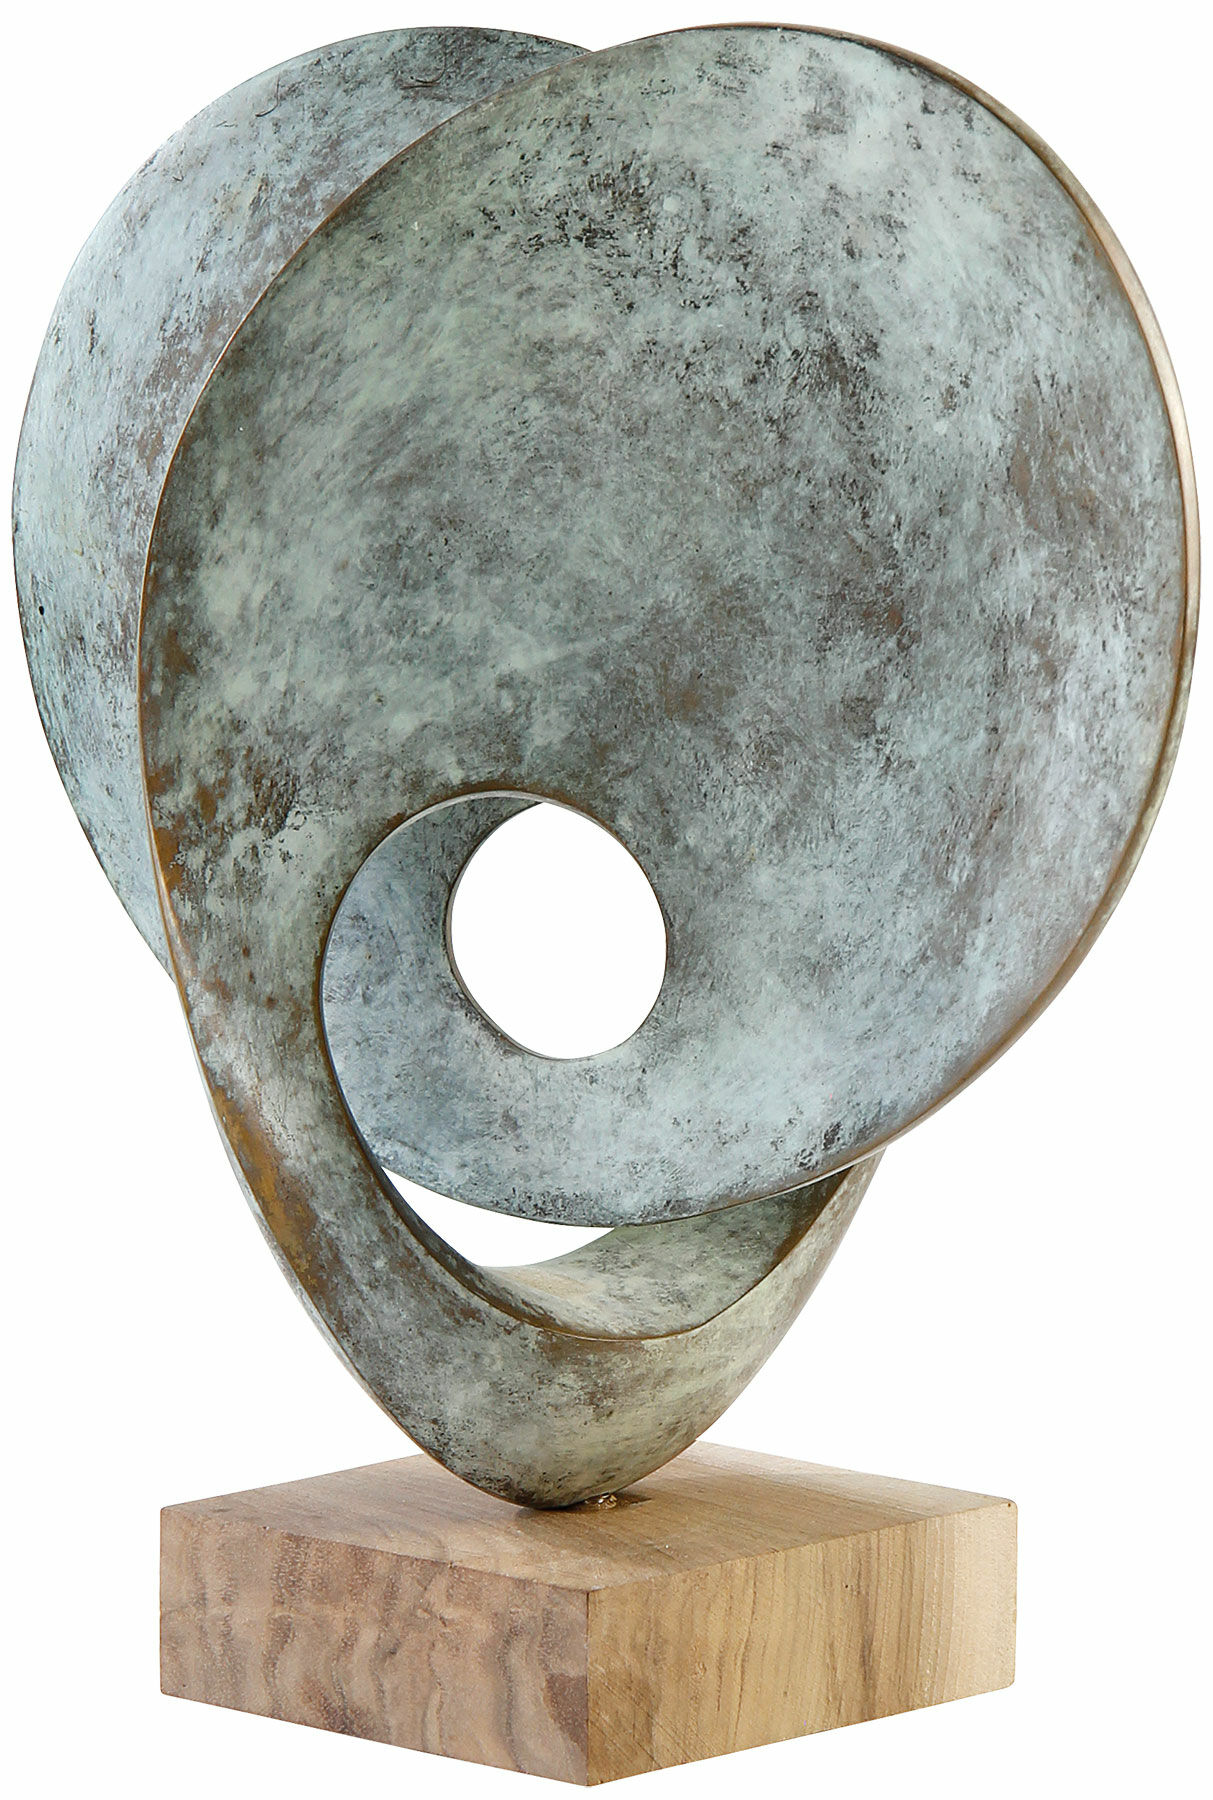 Skulptur "Journey I" (2015), brons von Yves Rasch